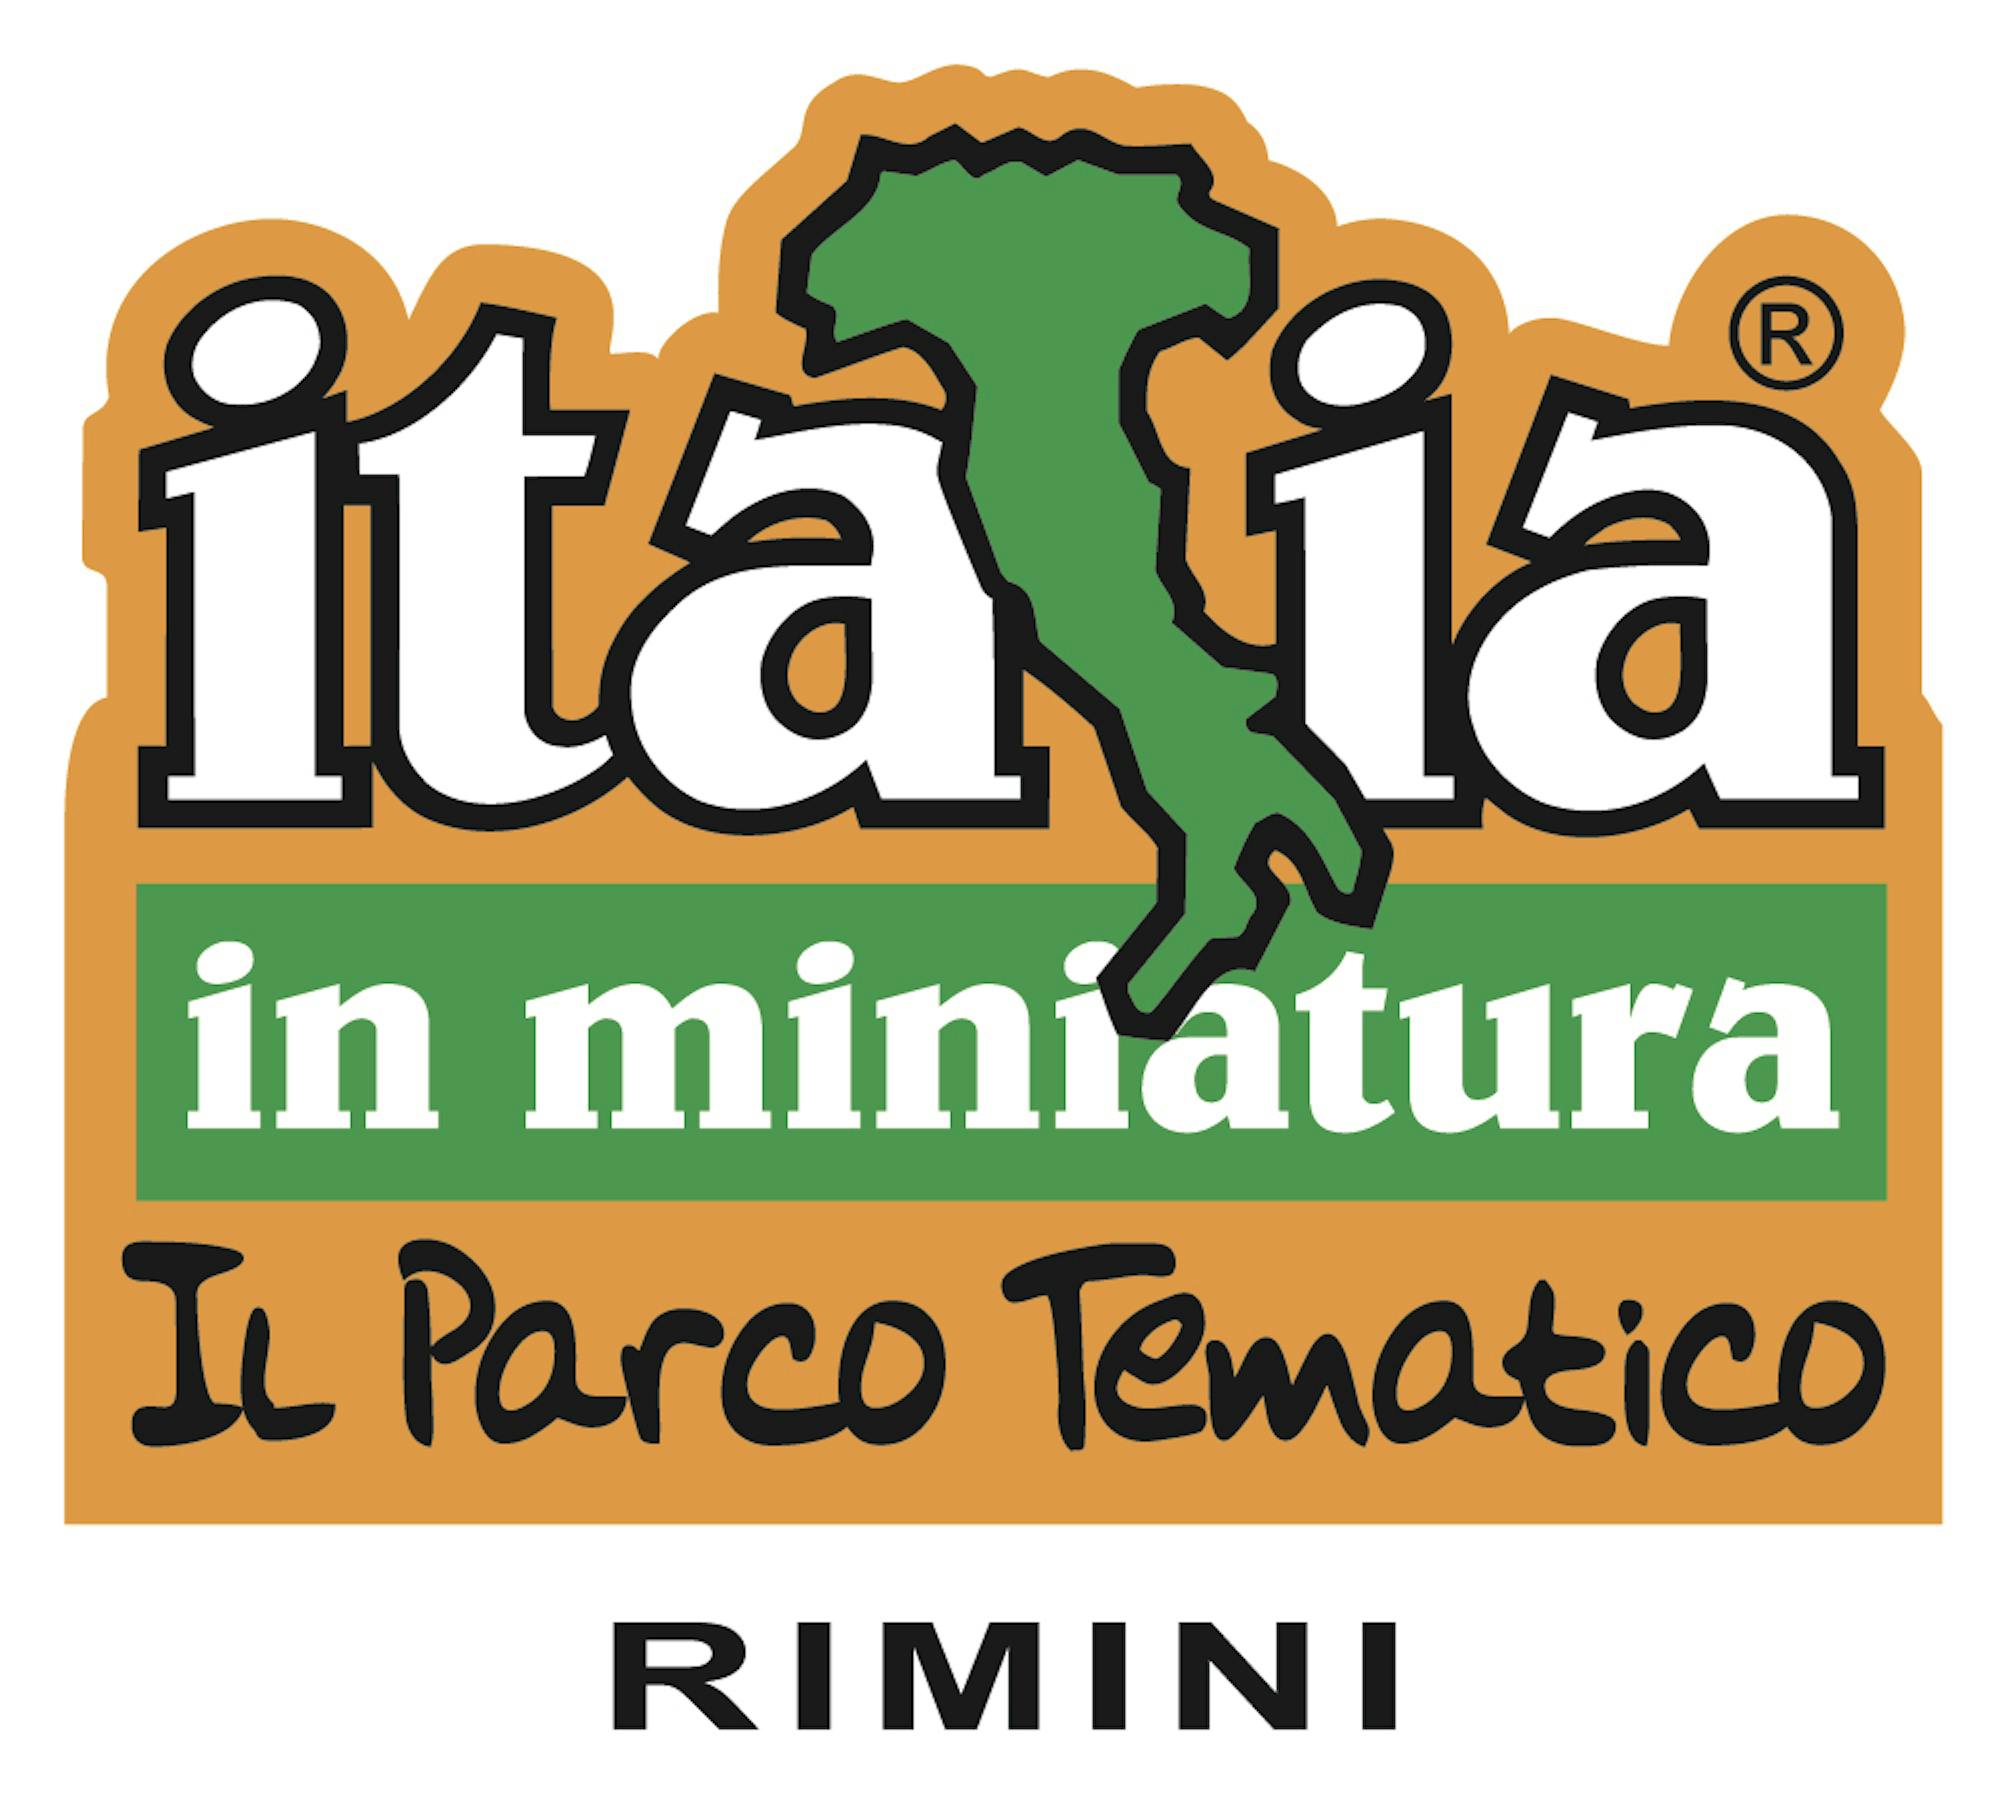 L'Italia in miniatura di Rimini per i diritti dell'infanzia